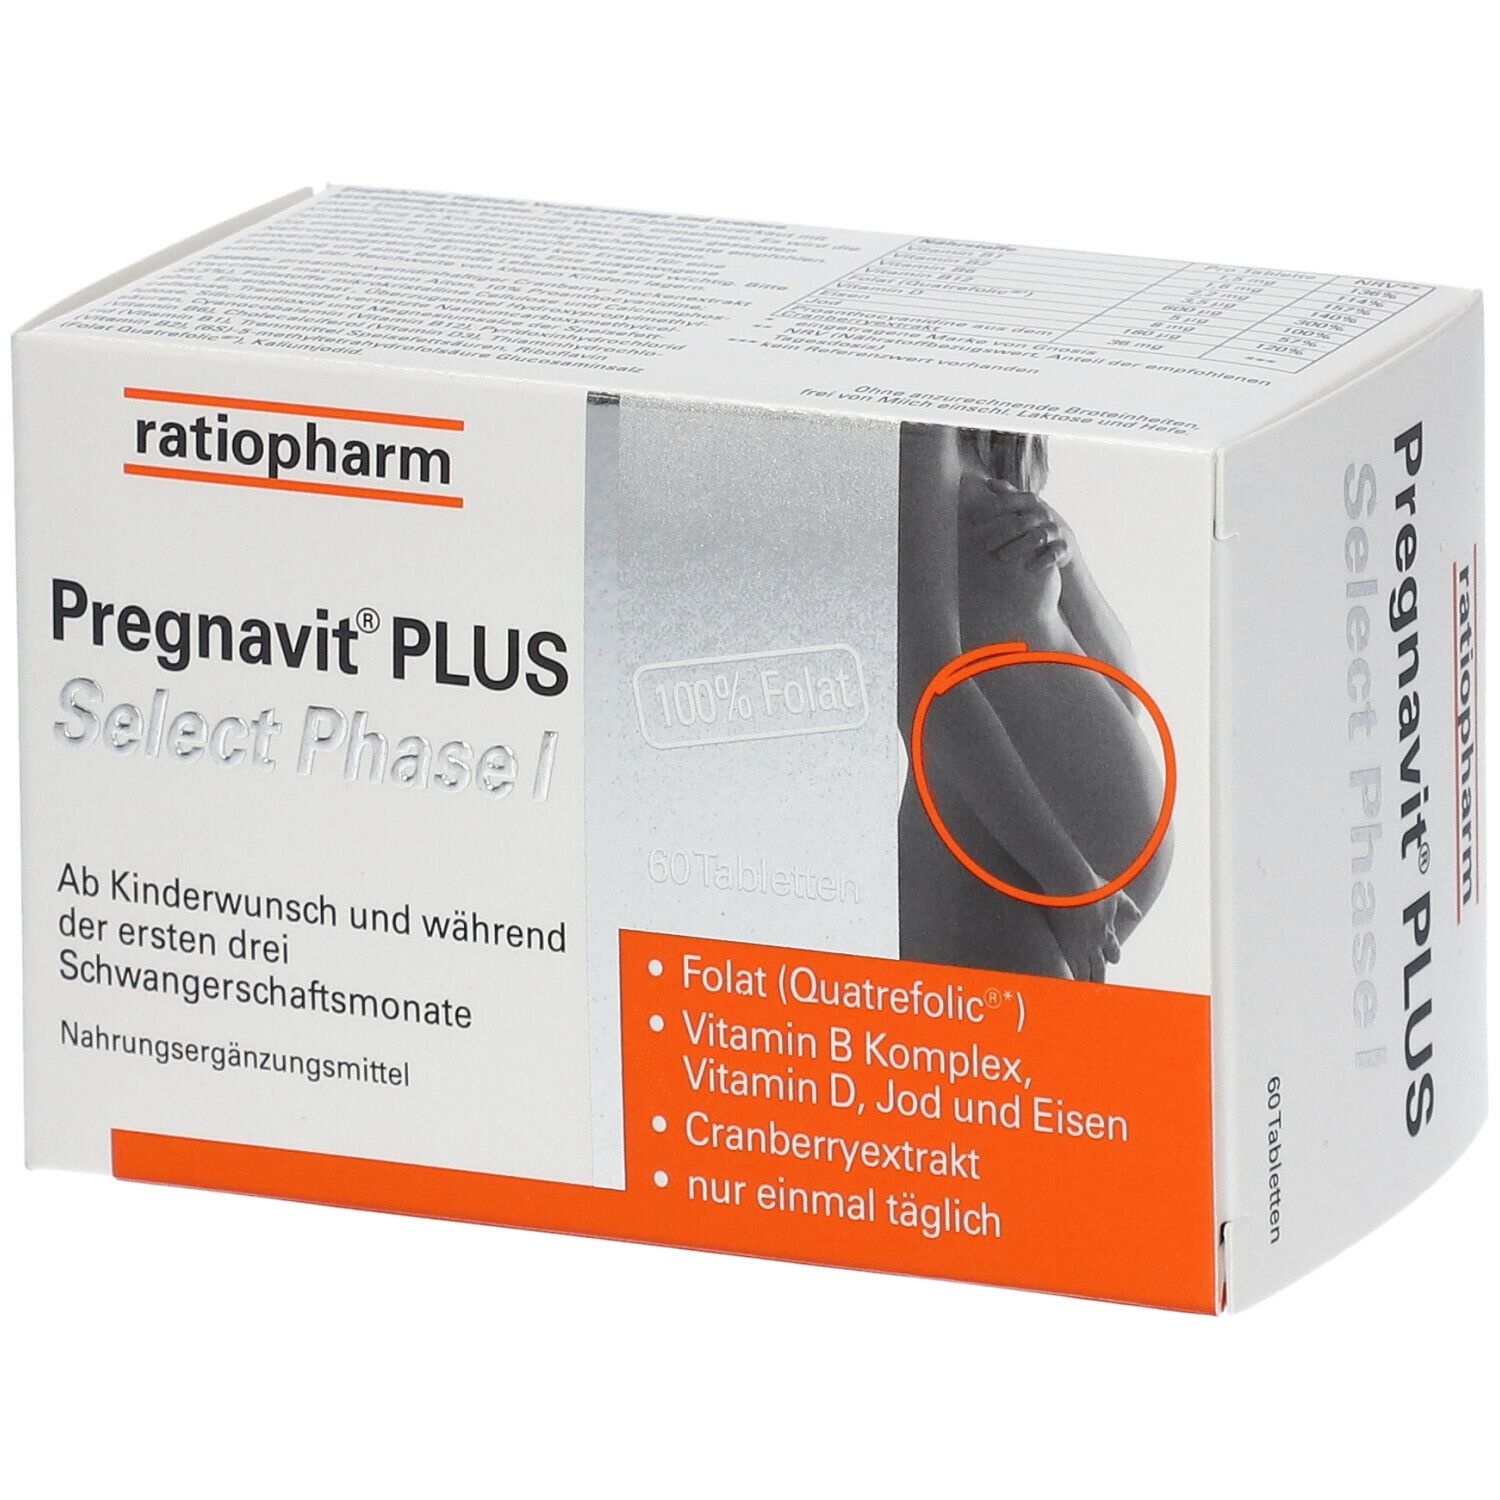 Pregnavit® PLUS Select Phase I thumbnail